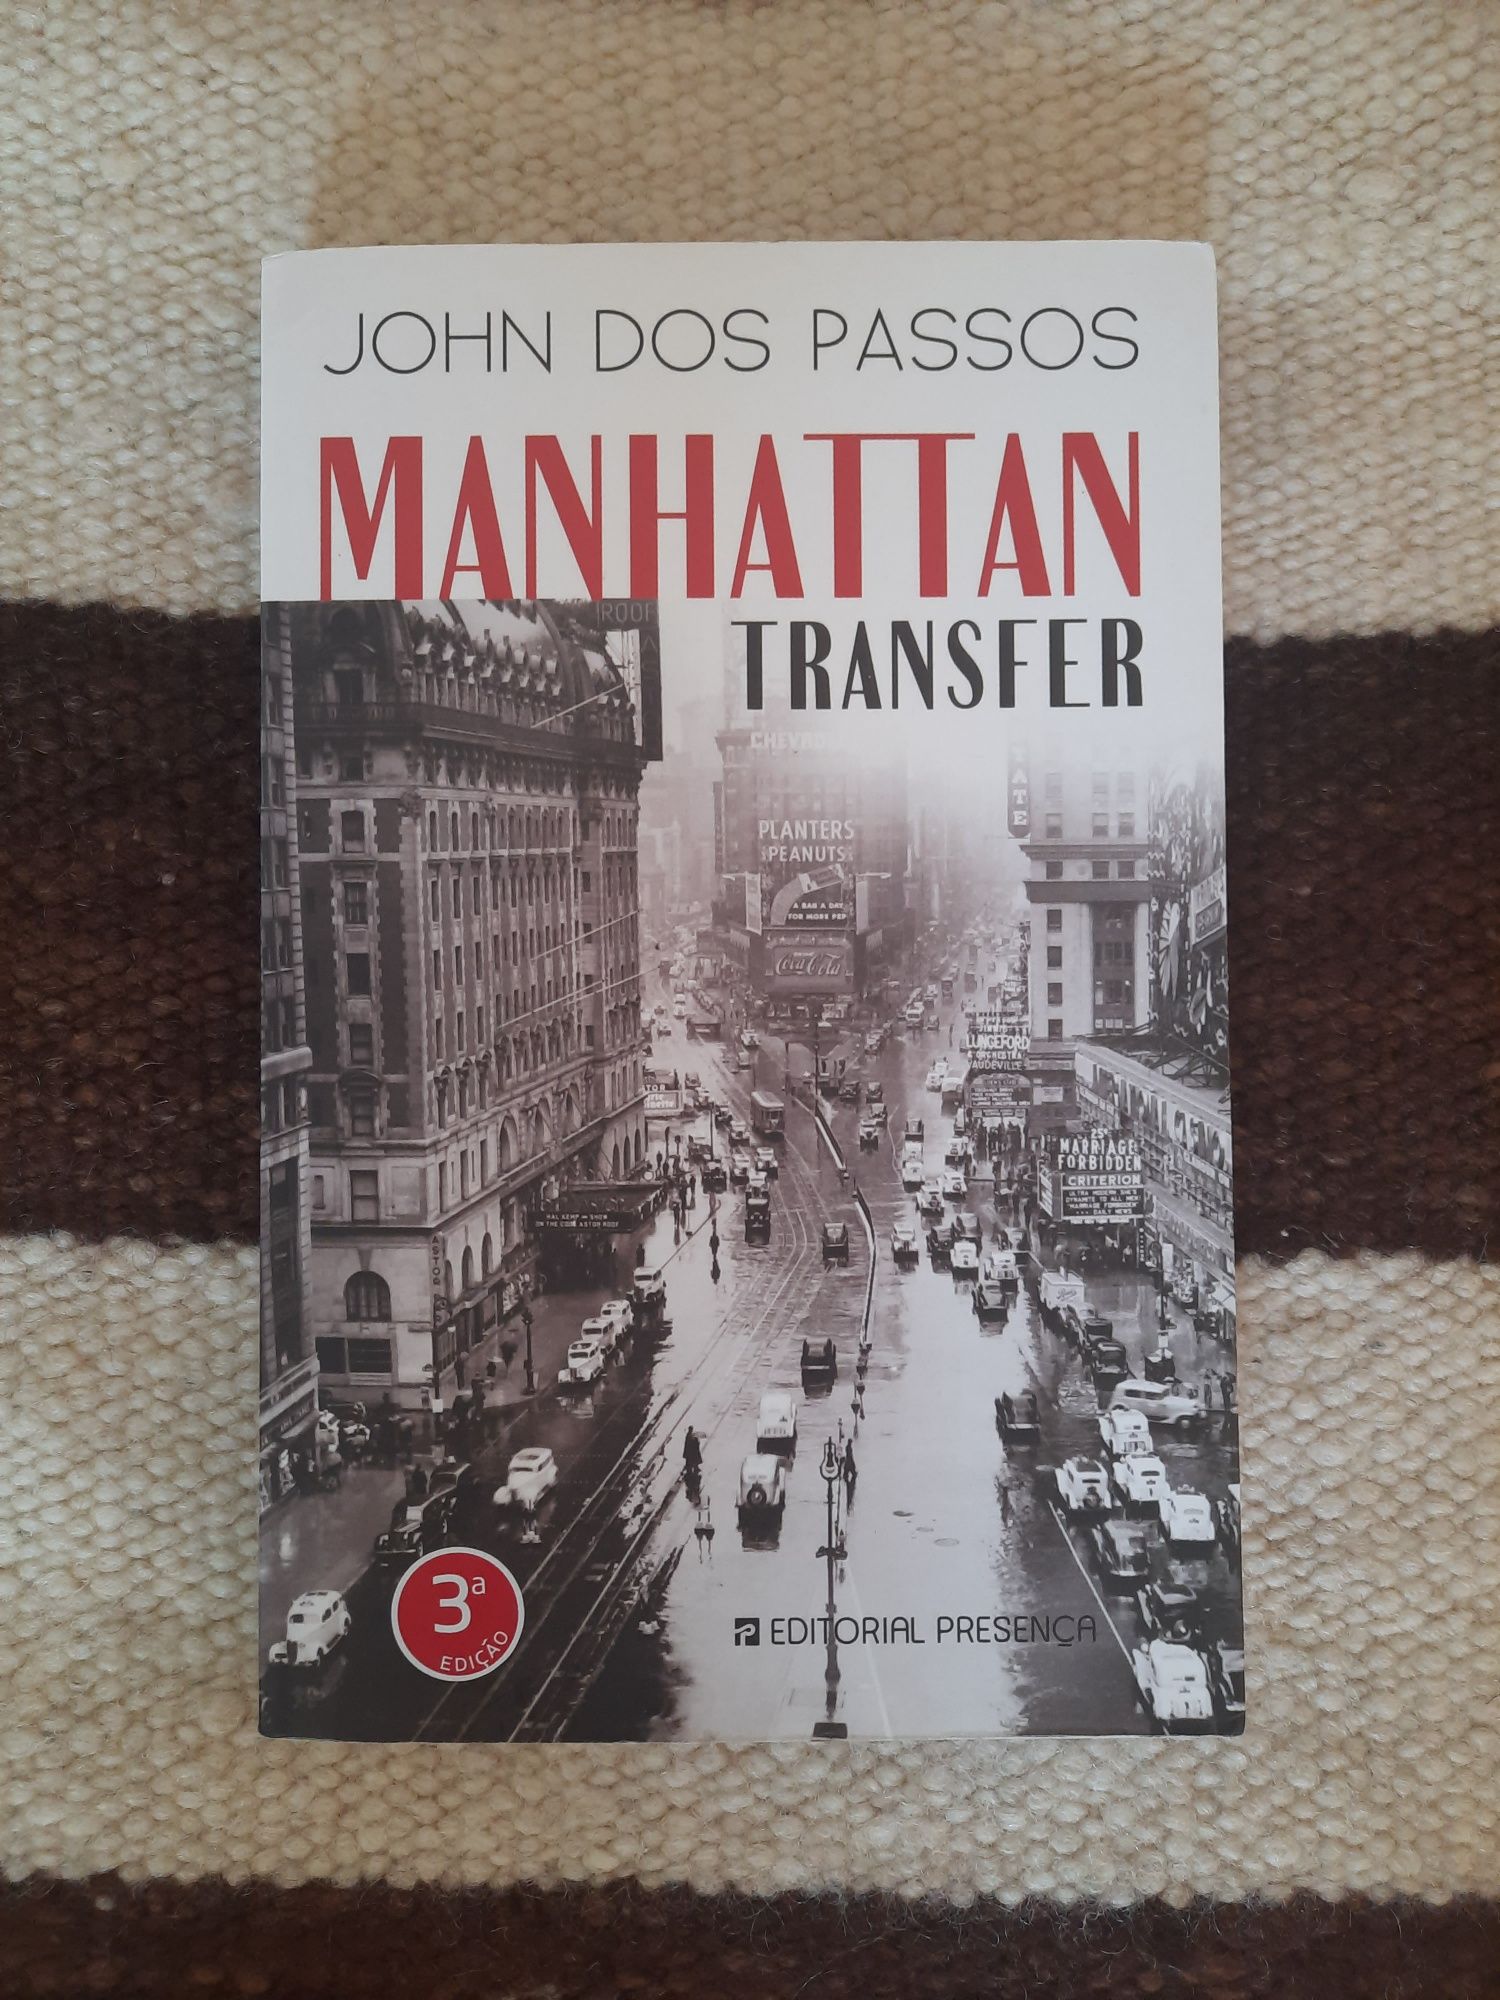 Livro "Manhattan Transfer", de John dos Passos